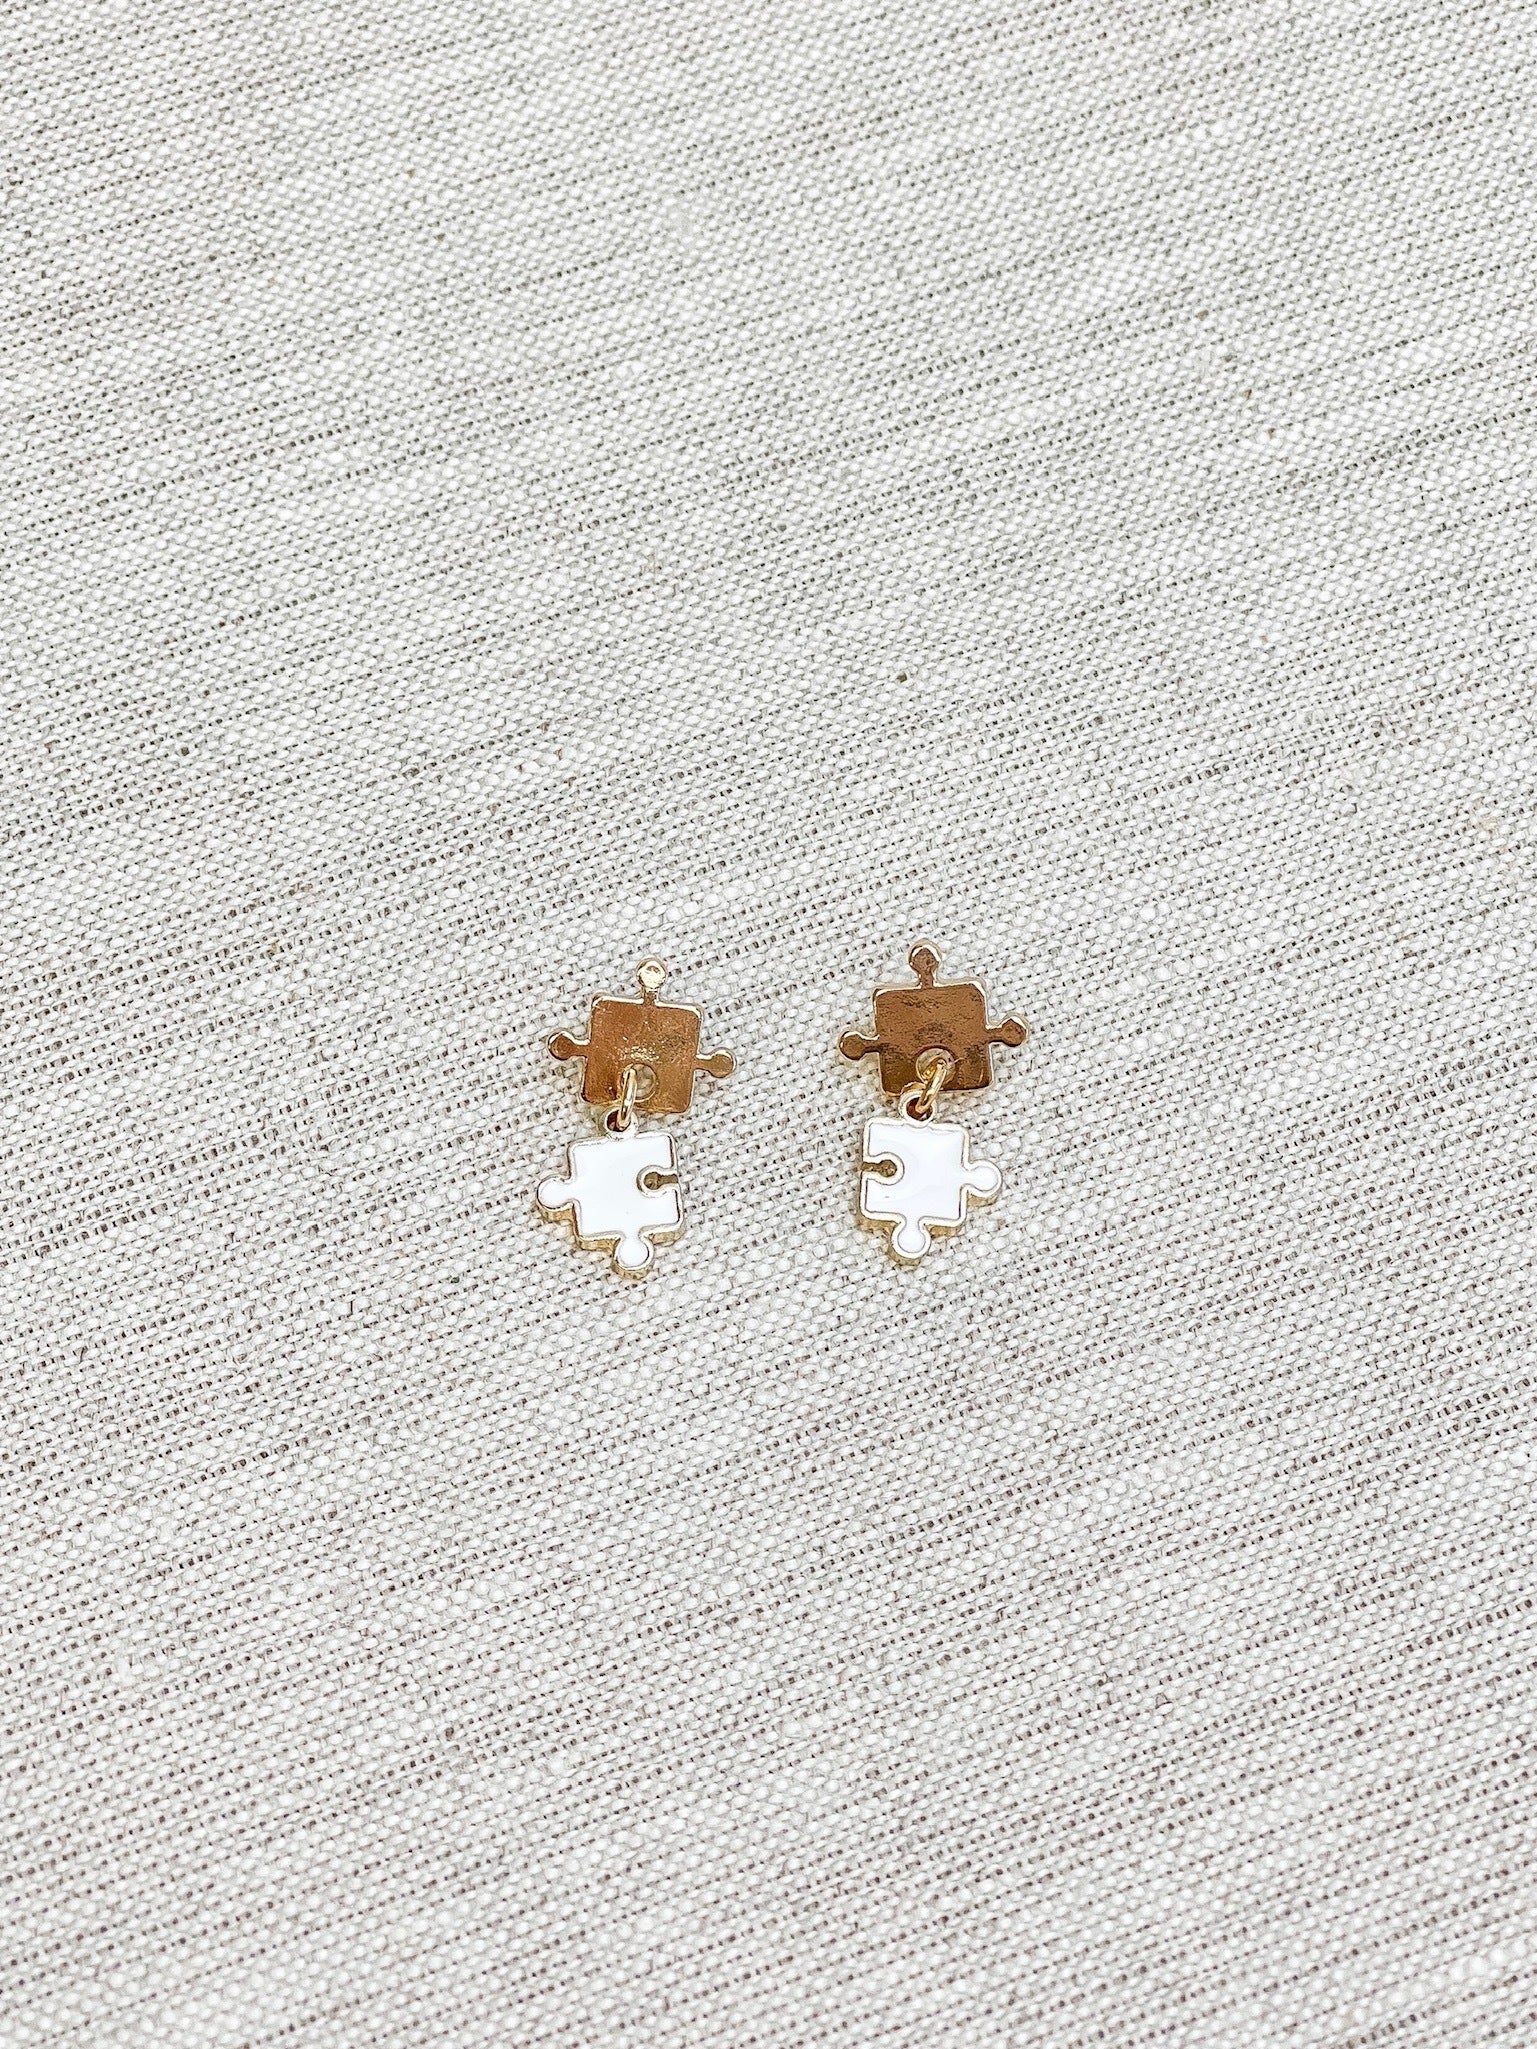 Enamel Puzzle Piece Dangle Earrings - White